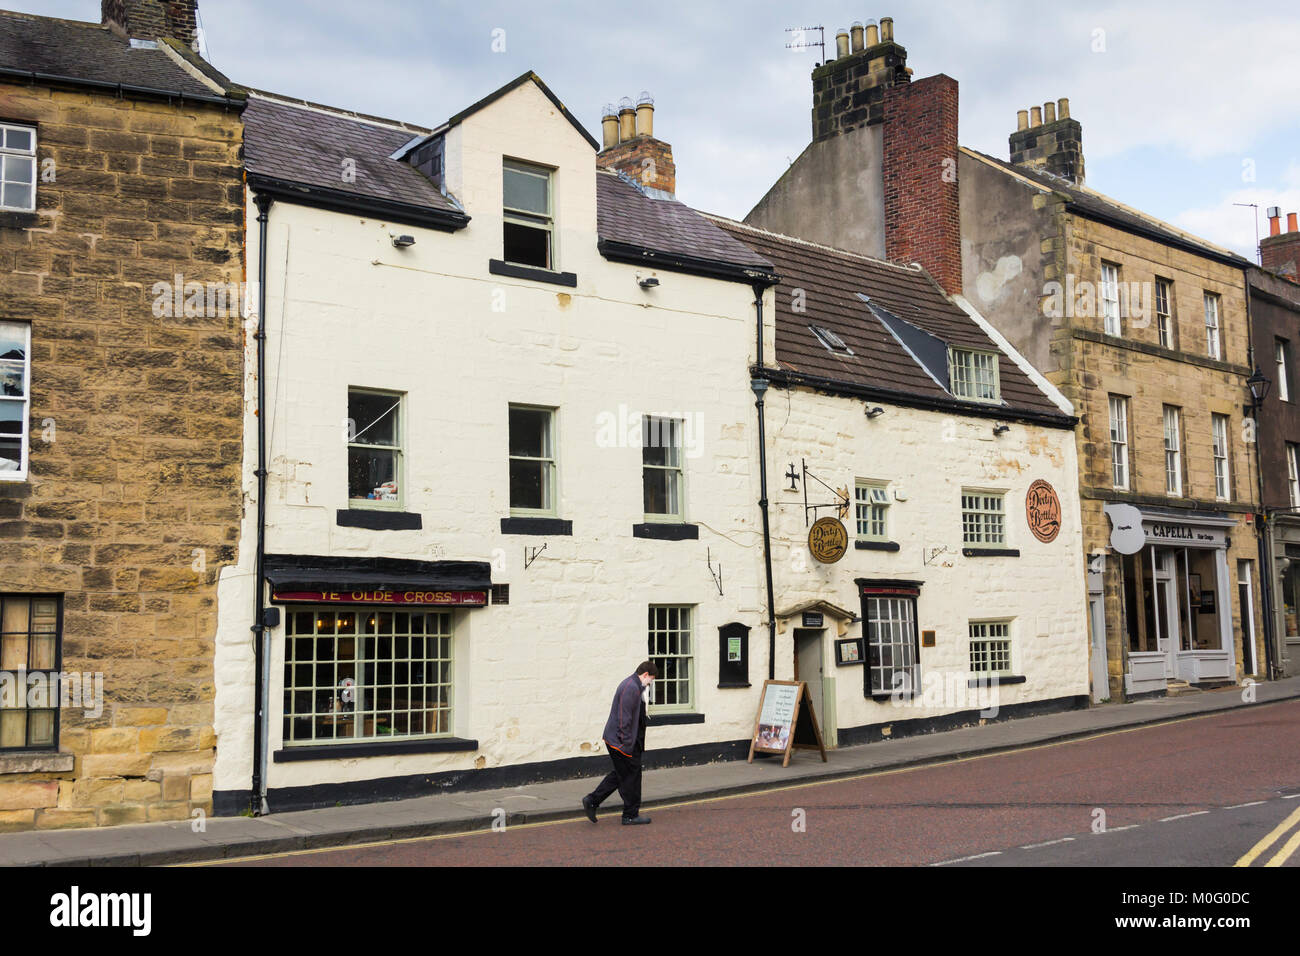 Bottiglie sporche (noto anche come Ye Olde Cross Inn), Narrowgate, Alnwick, Northumberland. La locanda è parte del XVII secolo e parte del XIX secolo. Foto Stock